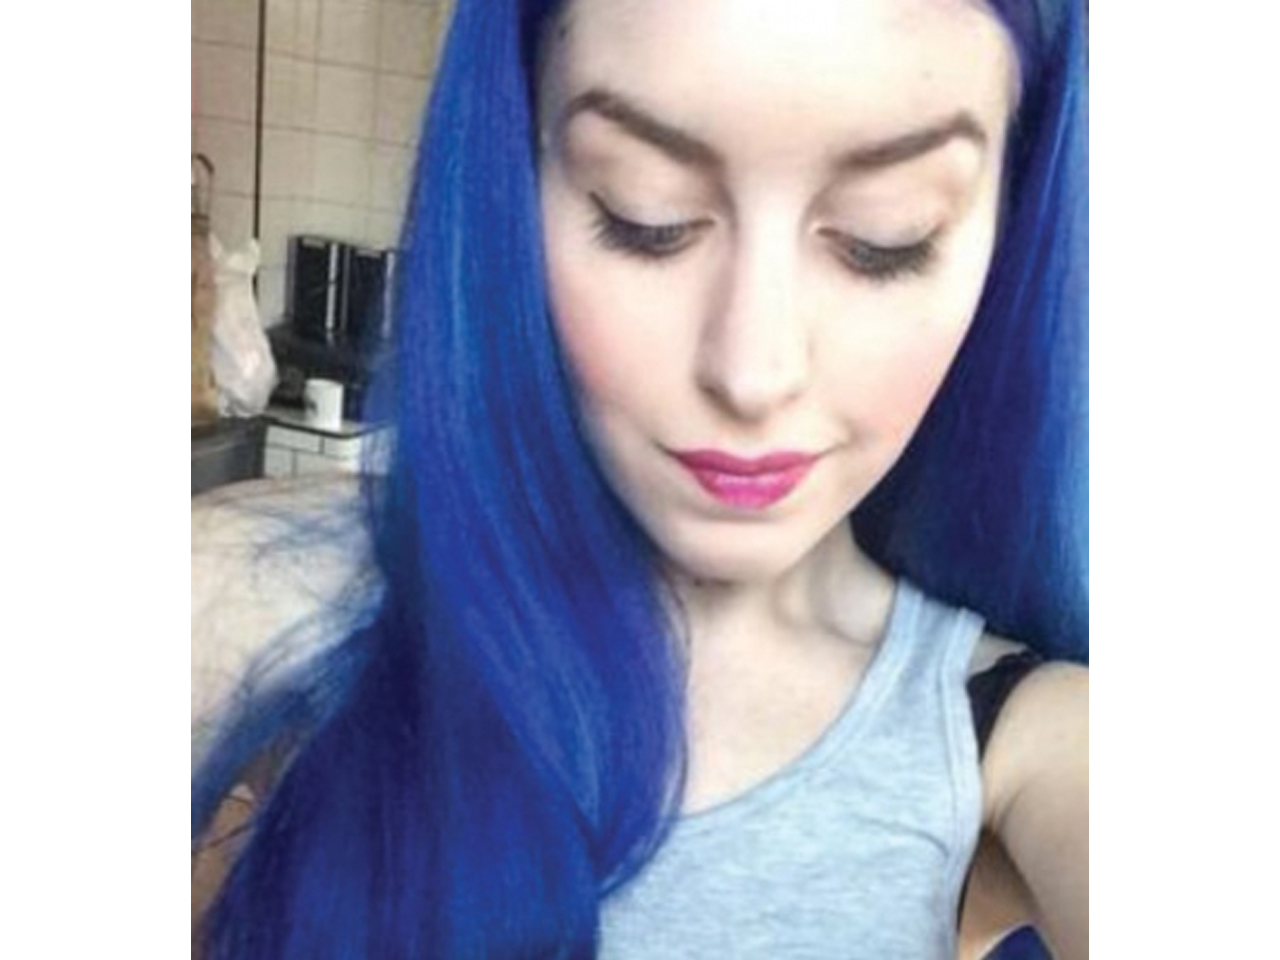 neon blue hair tan skin